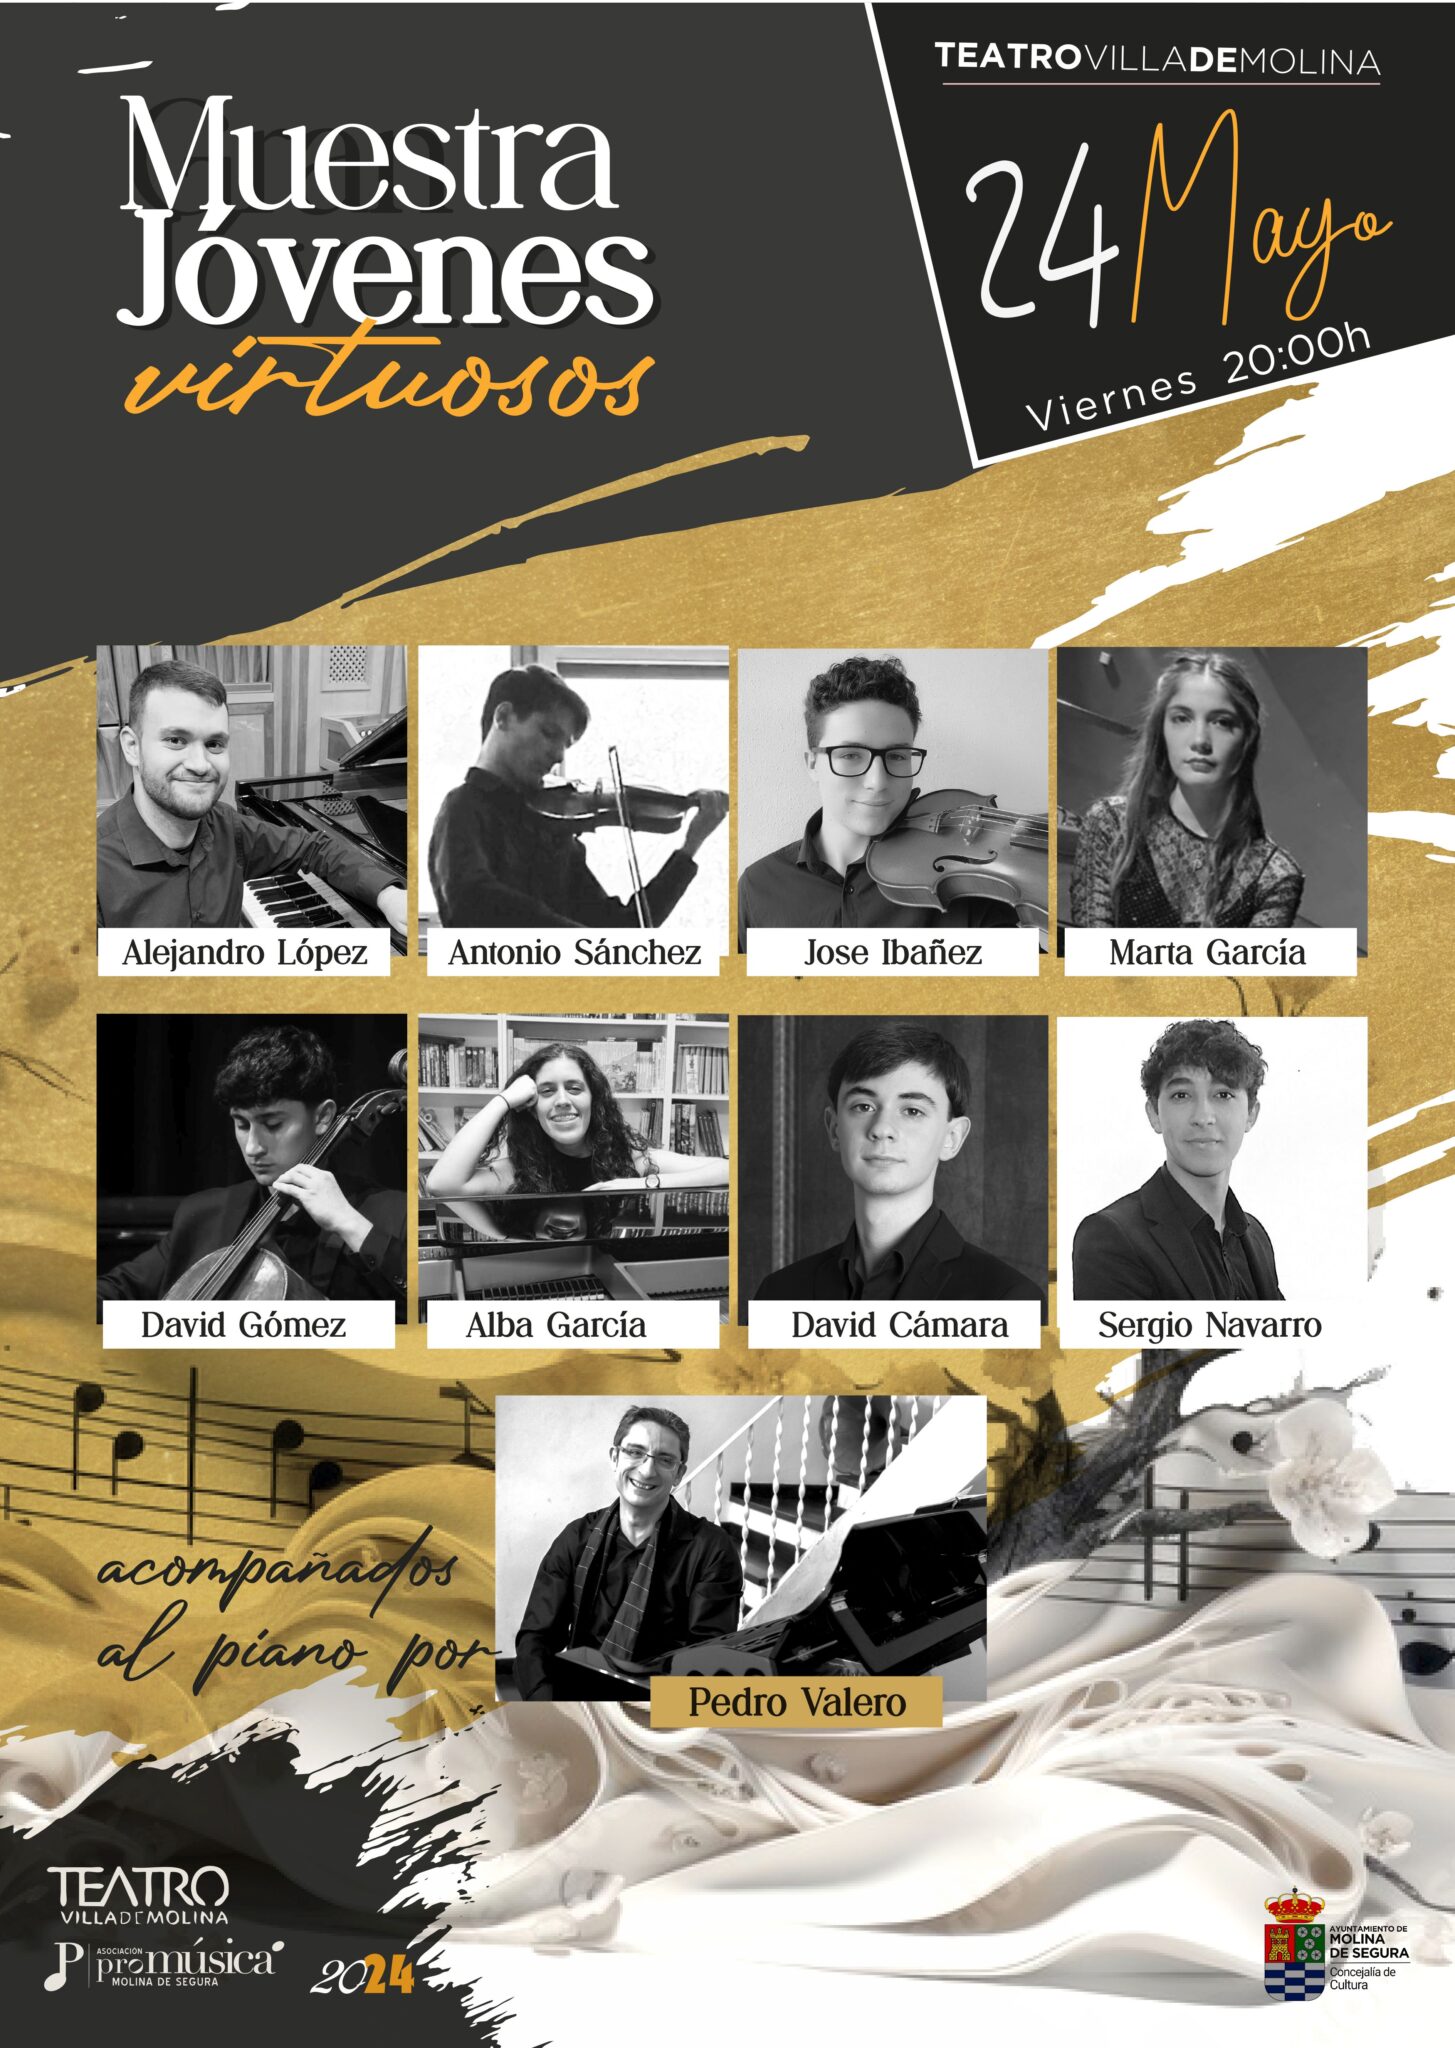 Muestra de Jóvenes Virtuosos, acompañados al piano por Pedro Valero, el viernes 24 de mayo, en el ‘Teatro Villa de Molina’